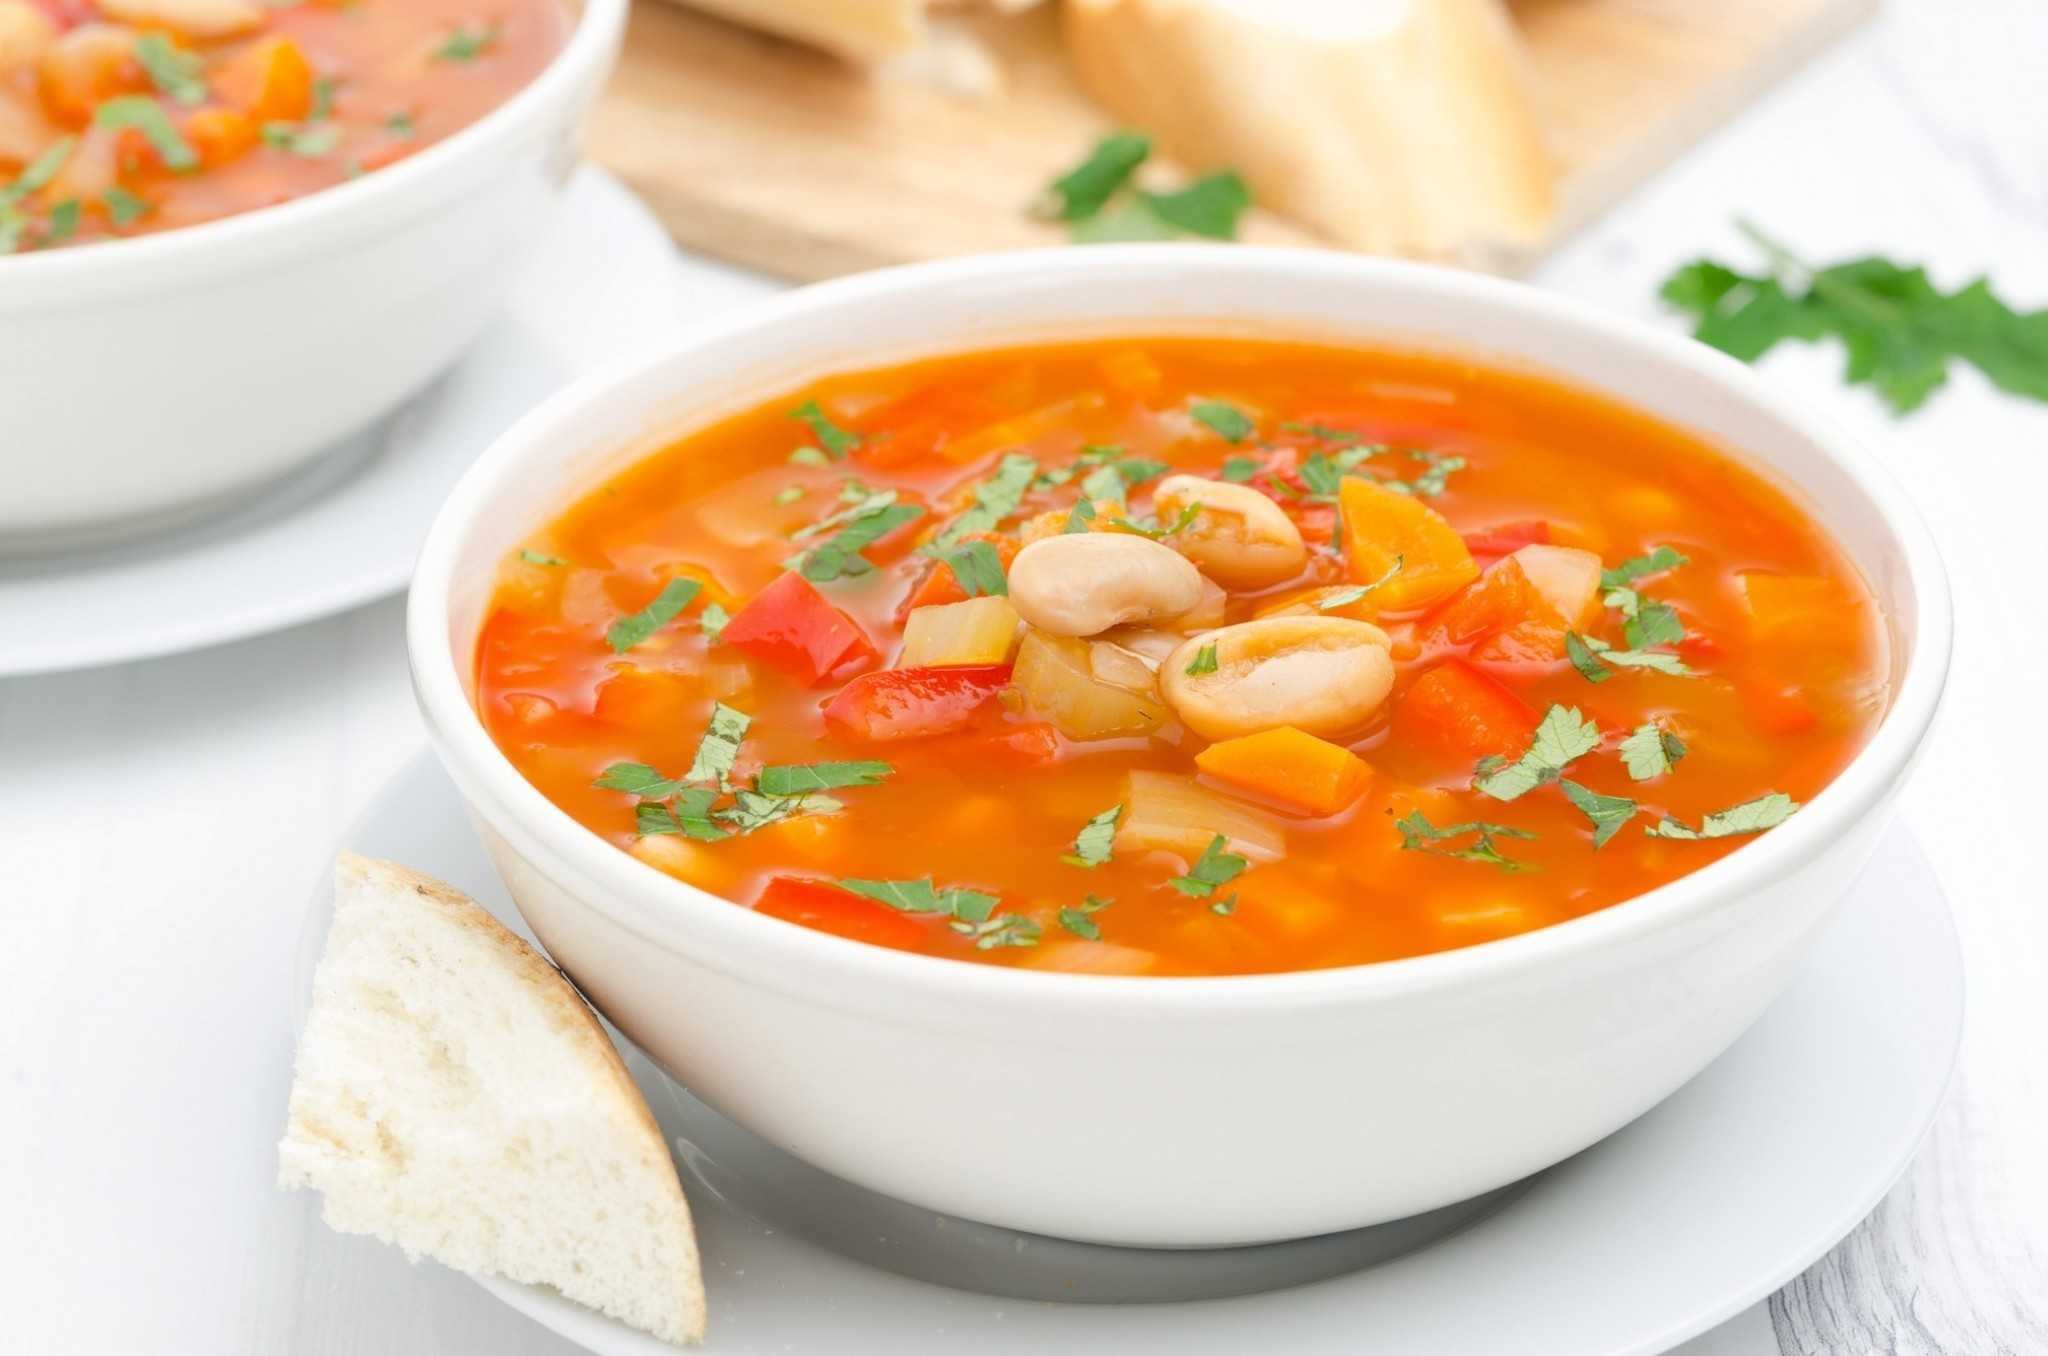 Минестроне – классический итальянский овощной суп